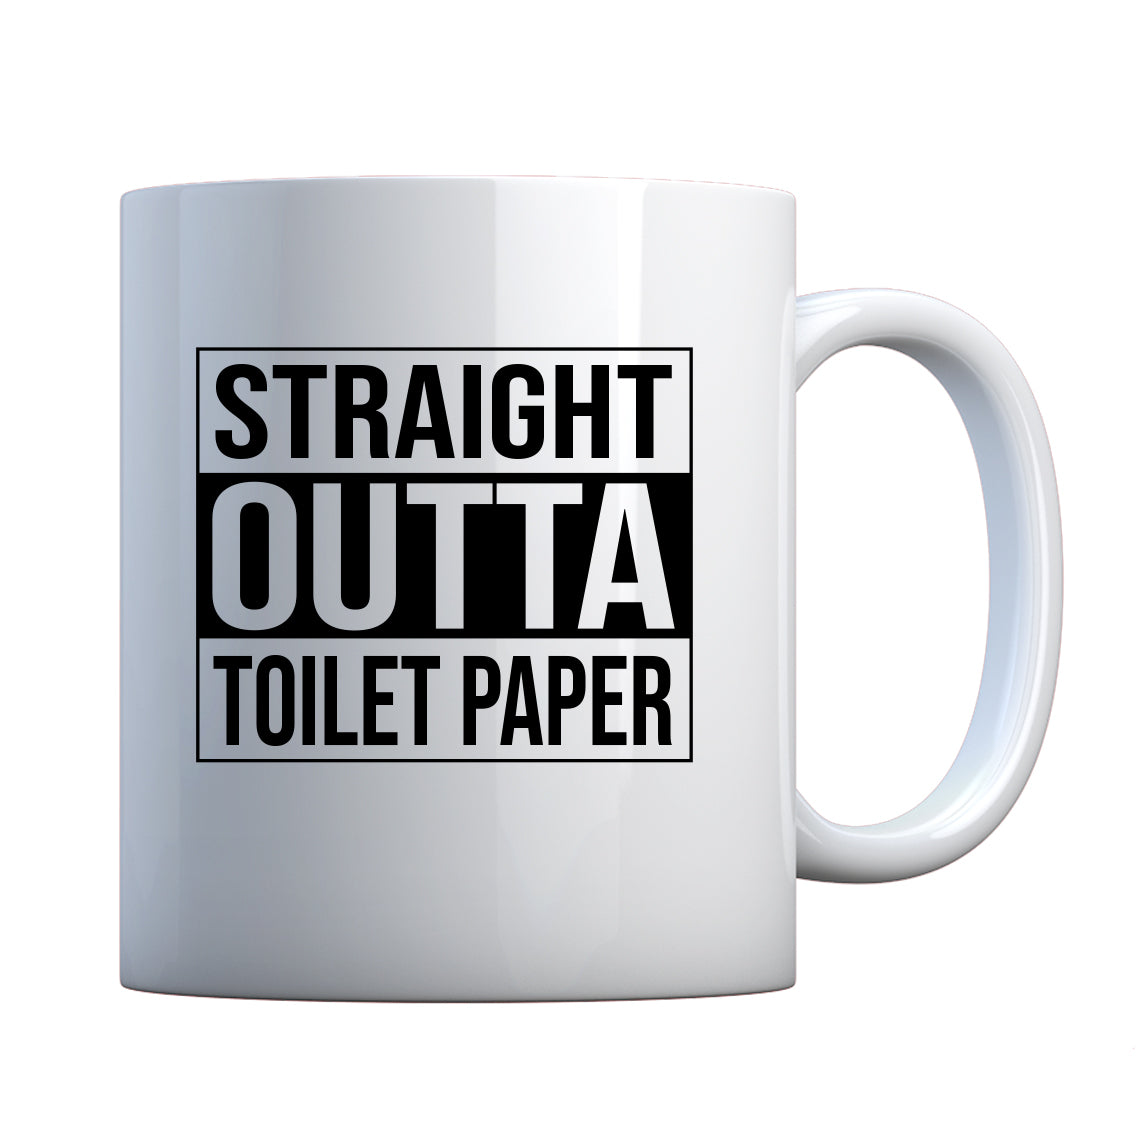 Straight Outta Toilet Paper Ceramic Gift Mug